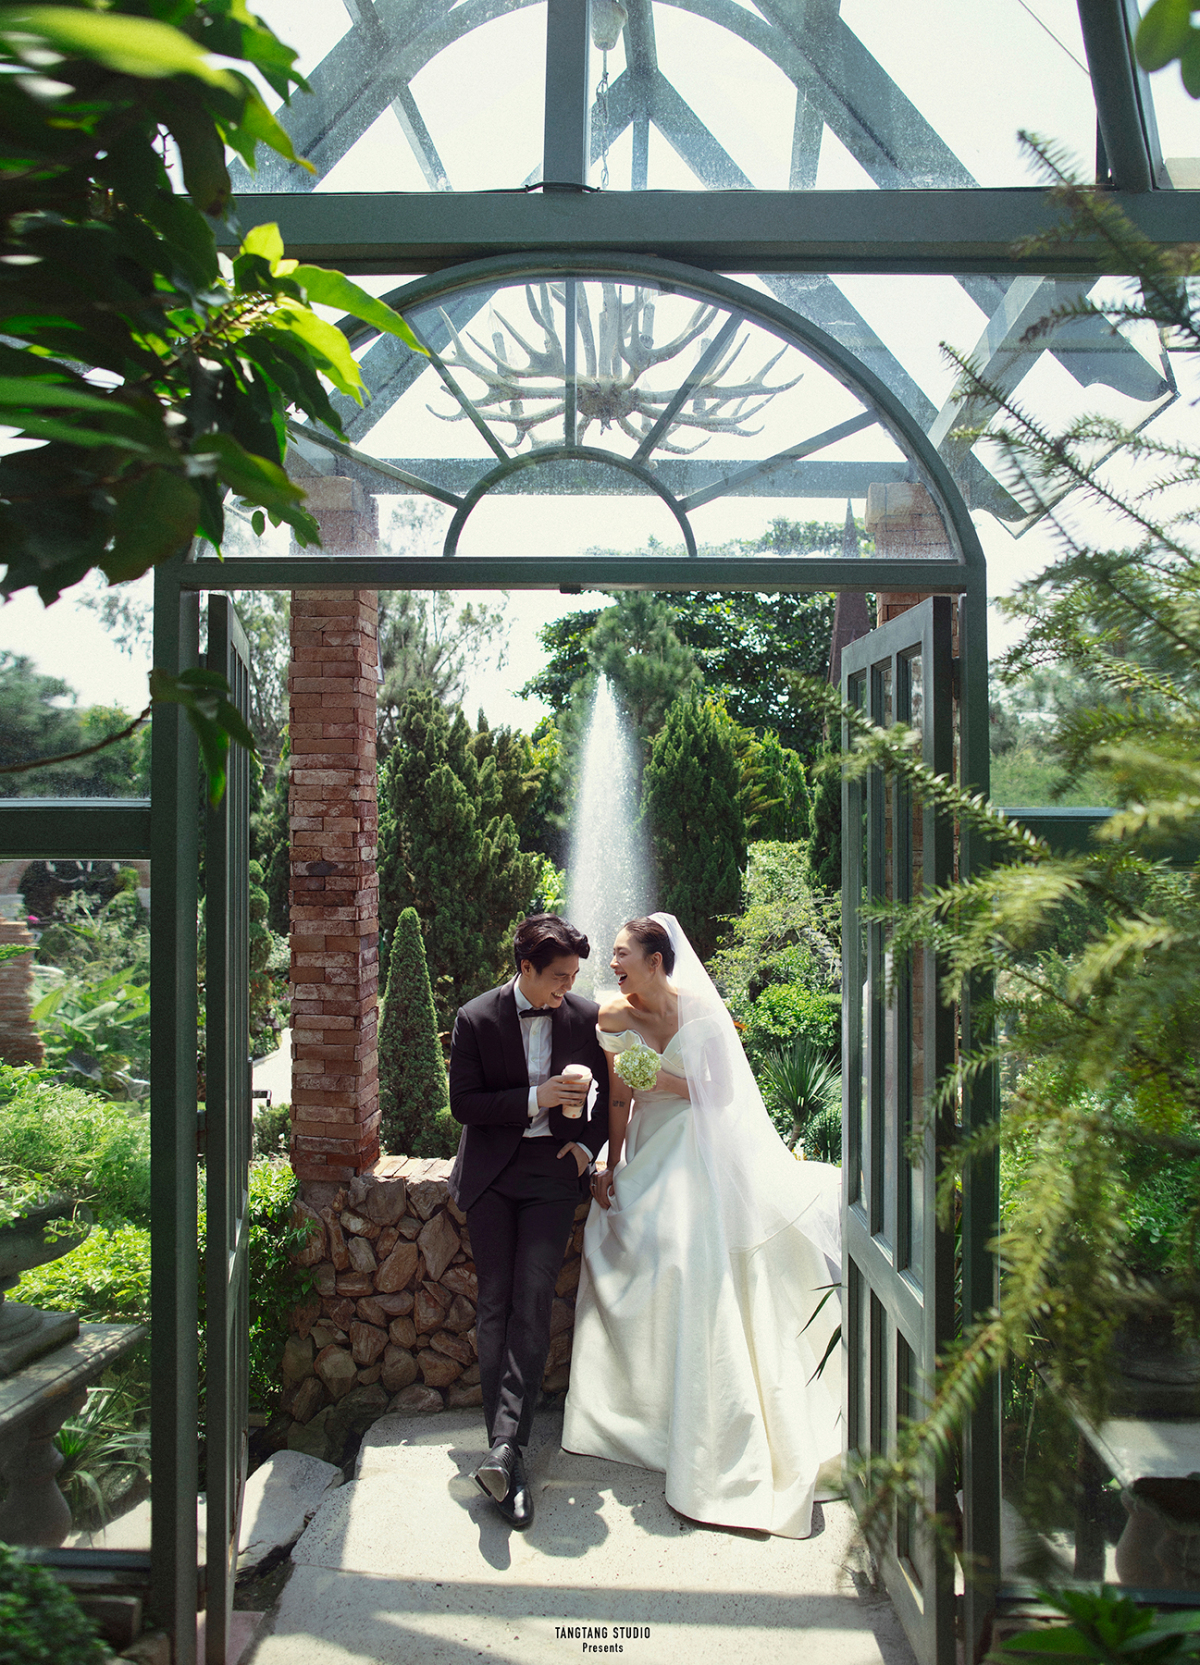 Ngắm trọn bộ ảnh cưới đẹp như cổ tích của Ngô Thanh Vân - Huy Trần - Ảnh 1